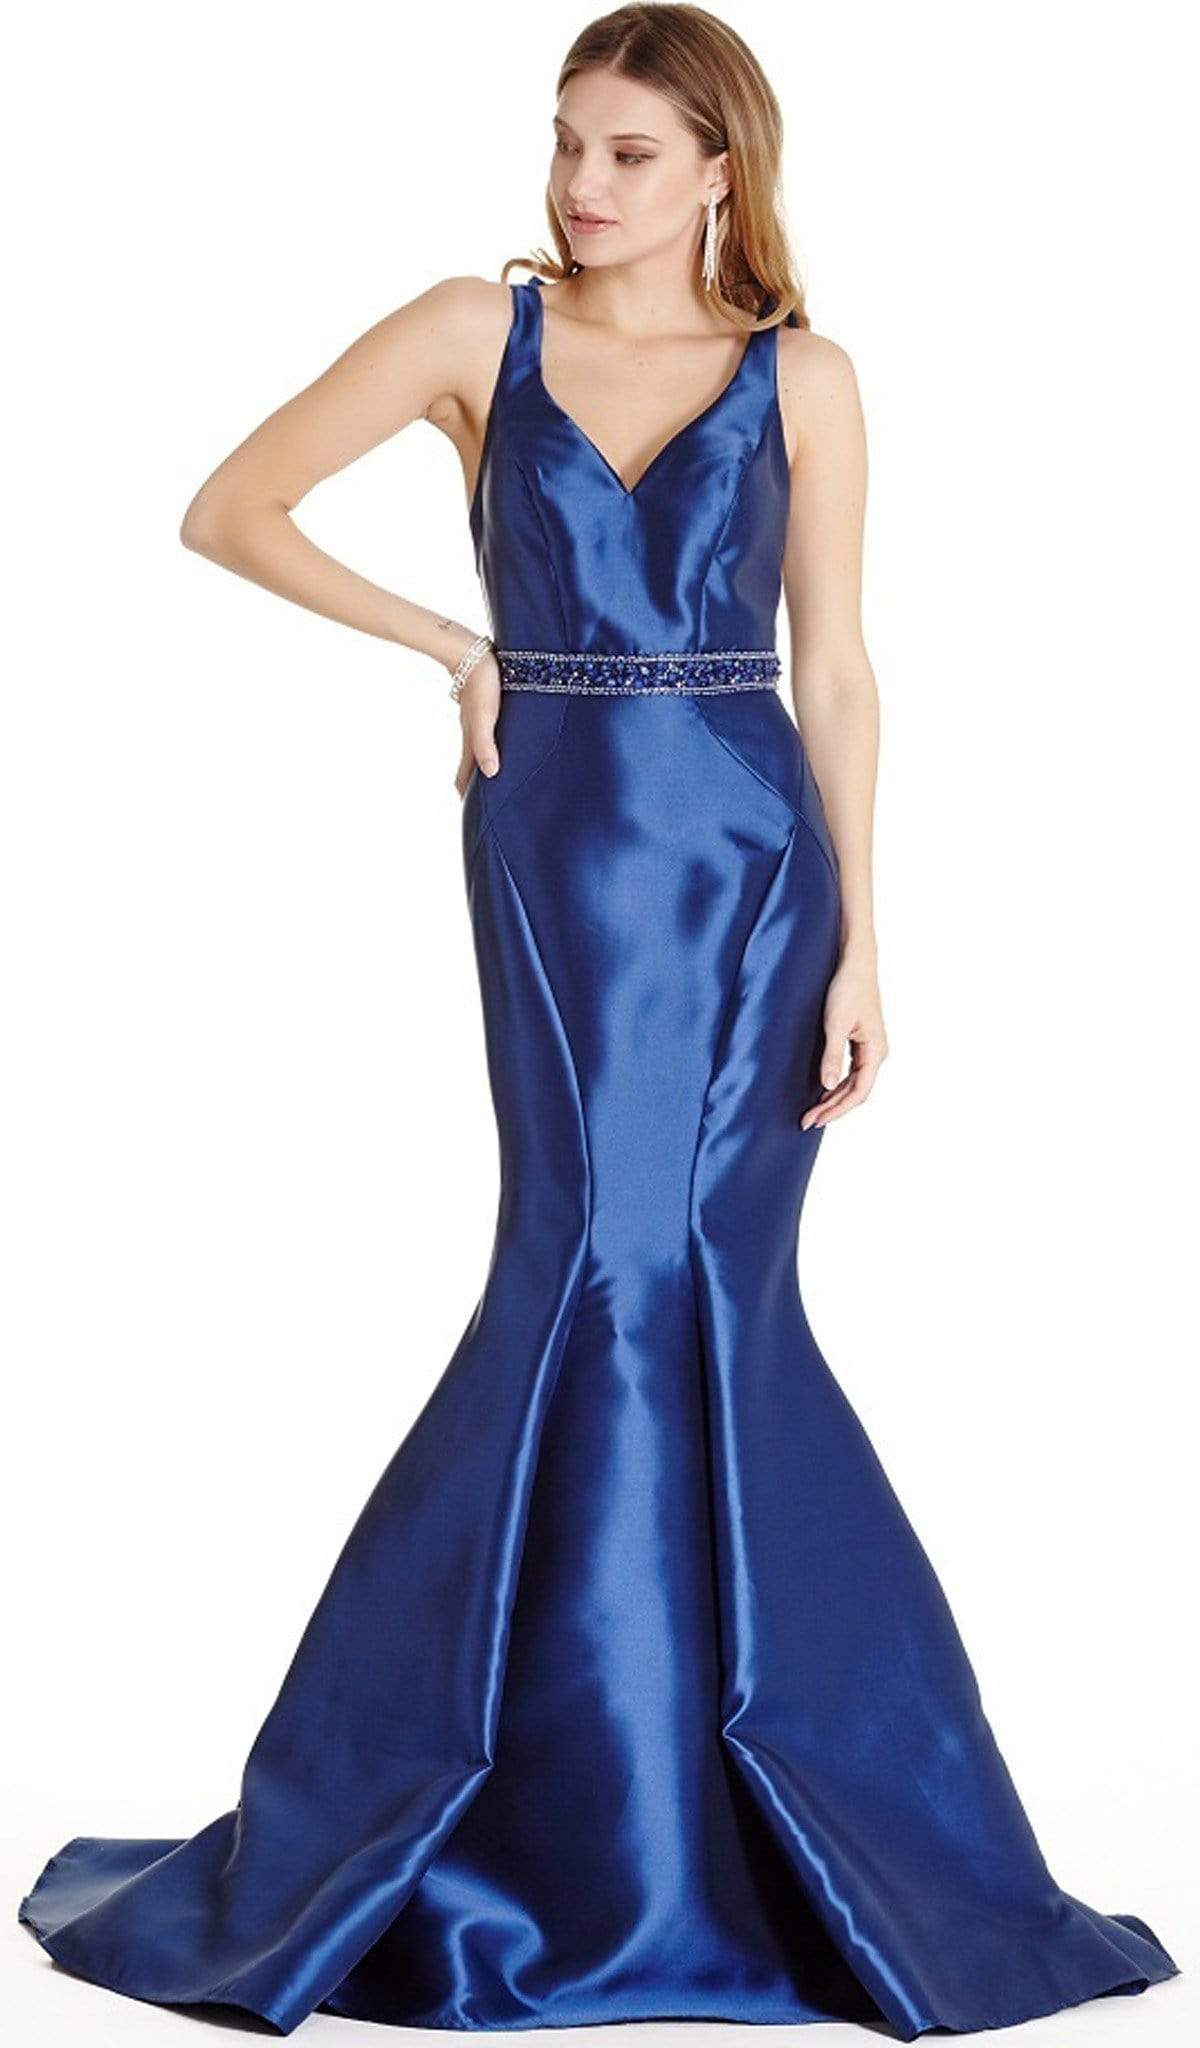 Image of Aspeed Design - Embellished V-neck Affordable Prom Dress